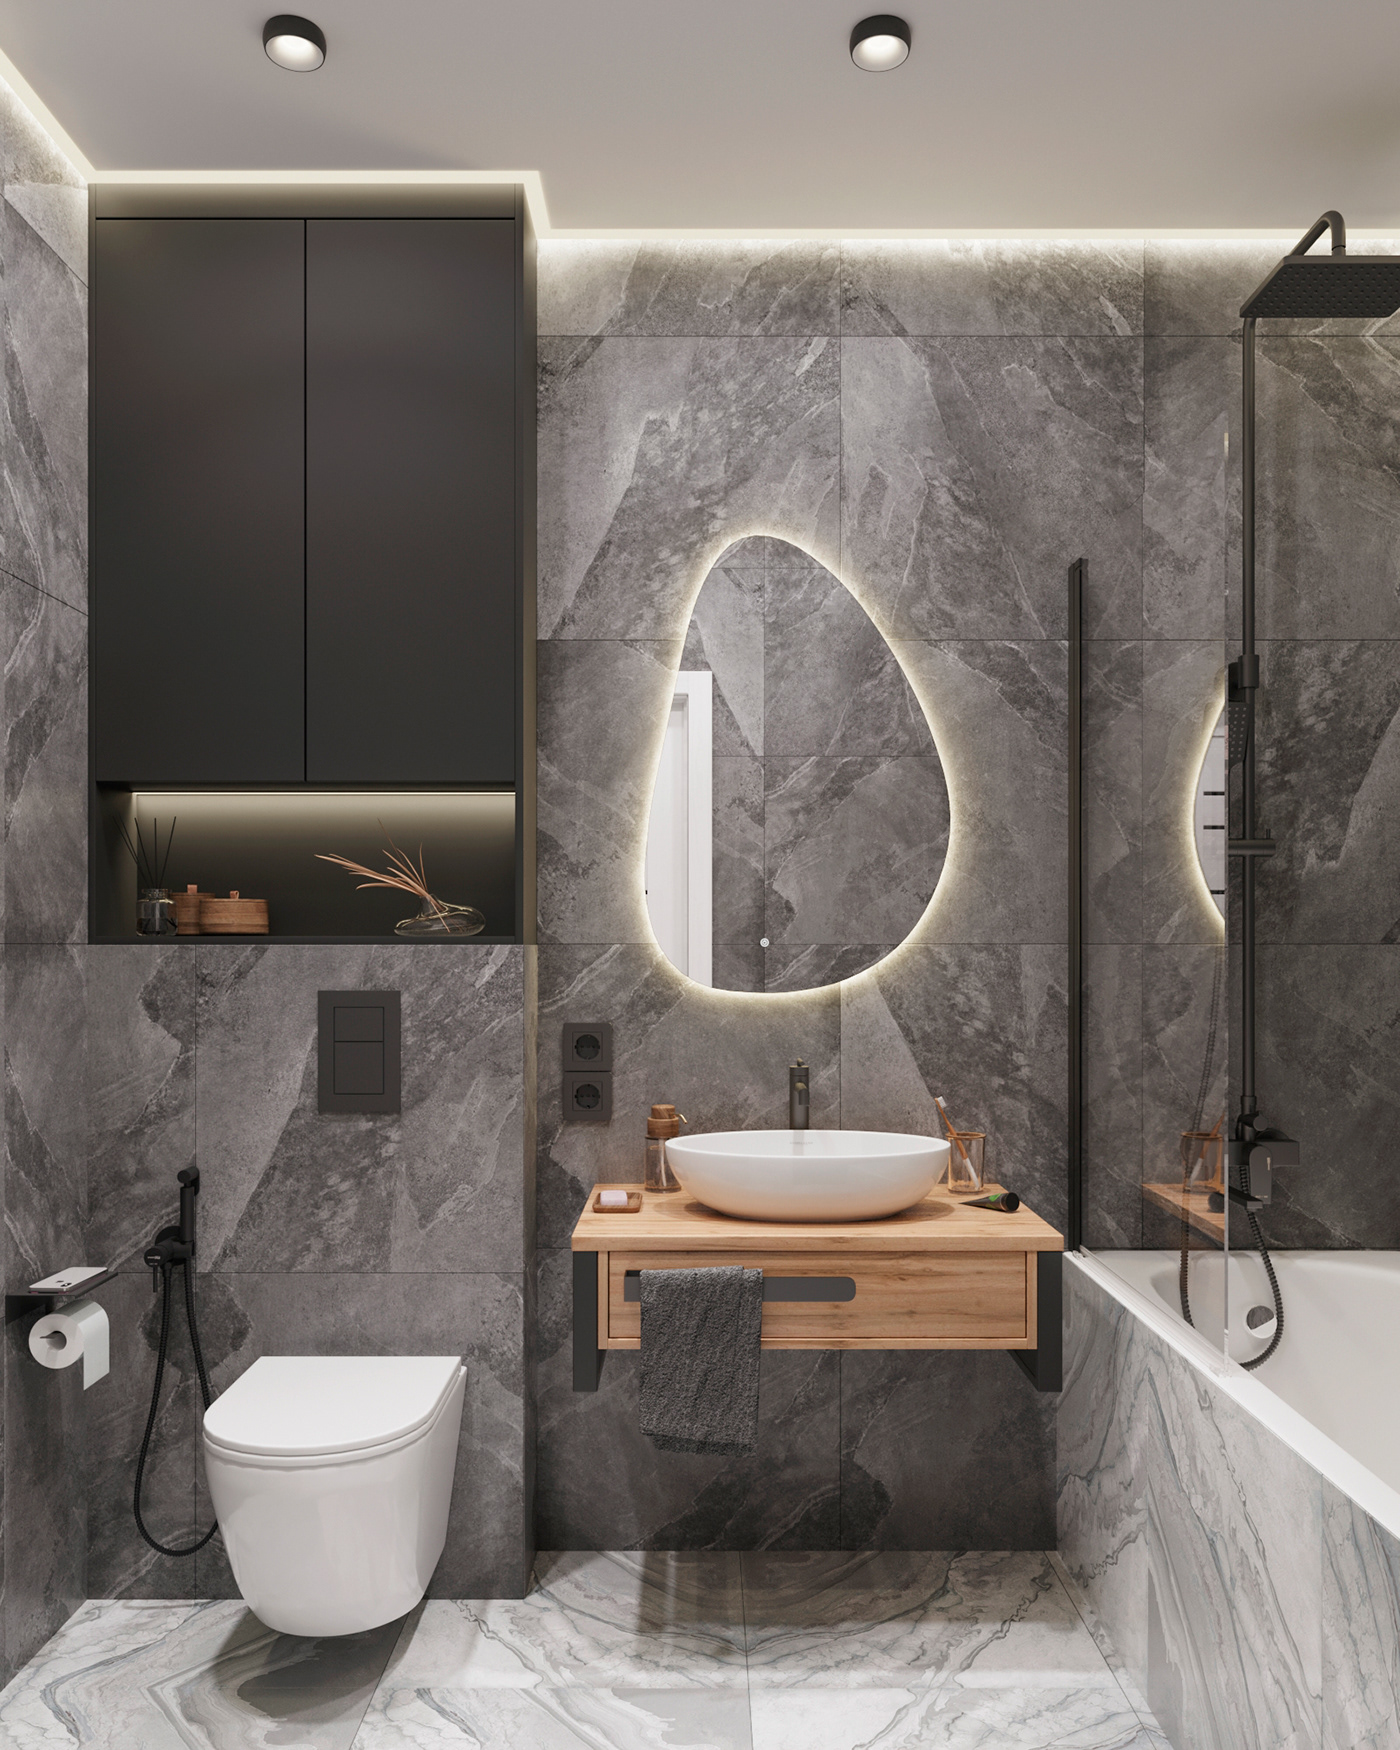 bathroom visualization 3ds max Brutalism toilet Render archviz